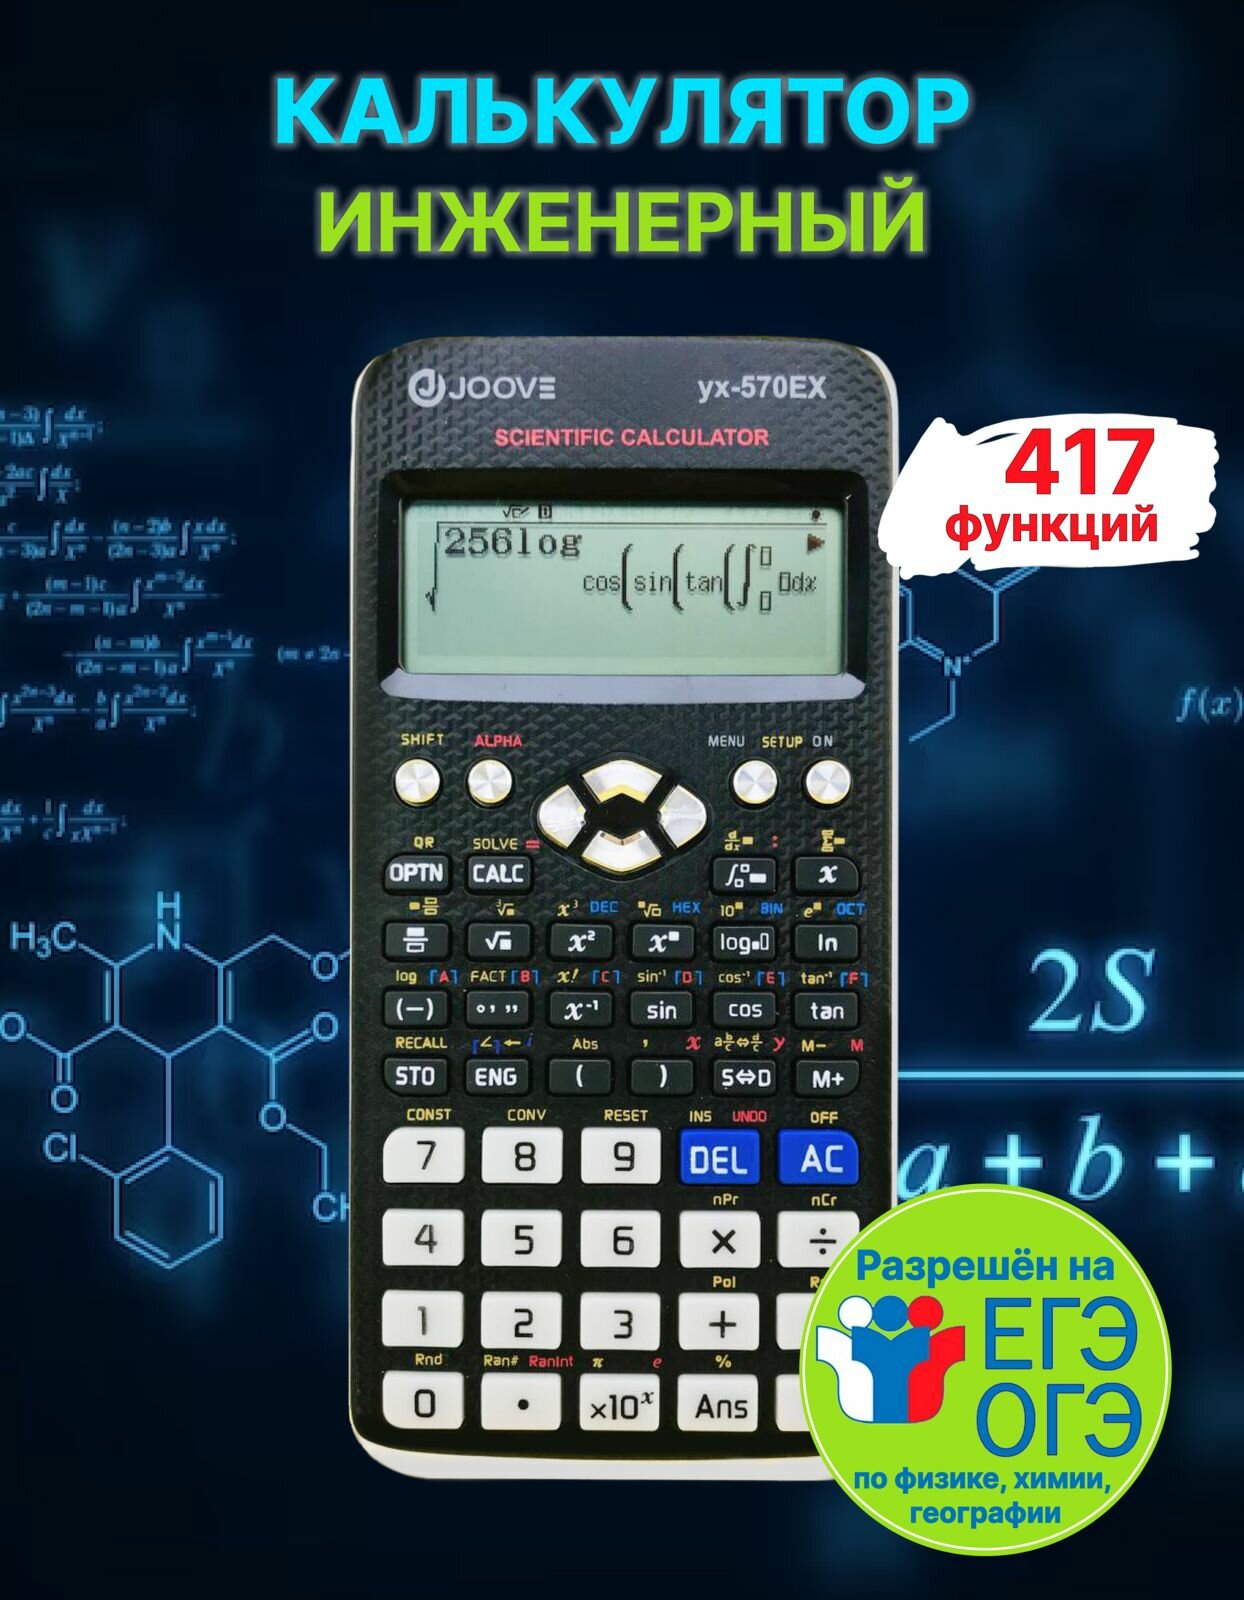 Калькулятор научный с 417 функциями - JOOVE YX-570 EX